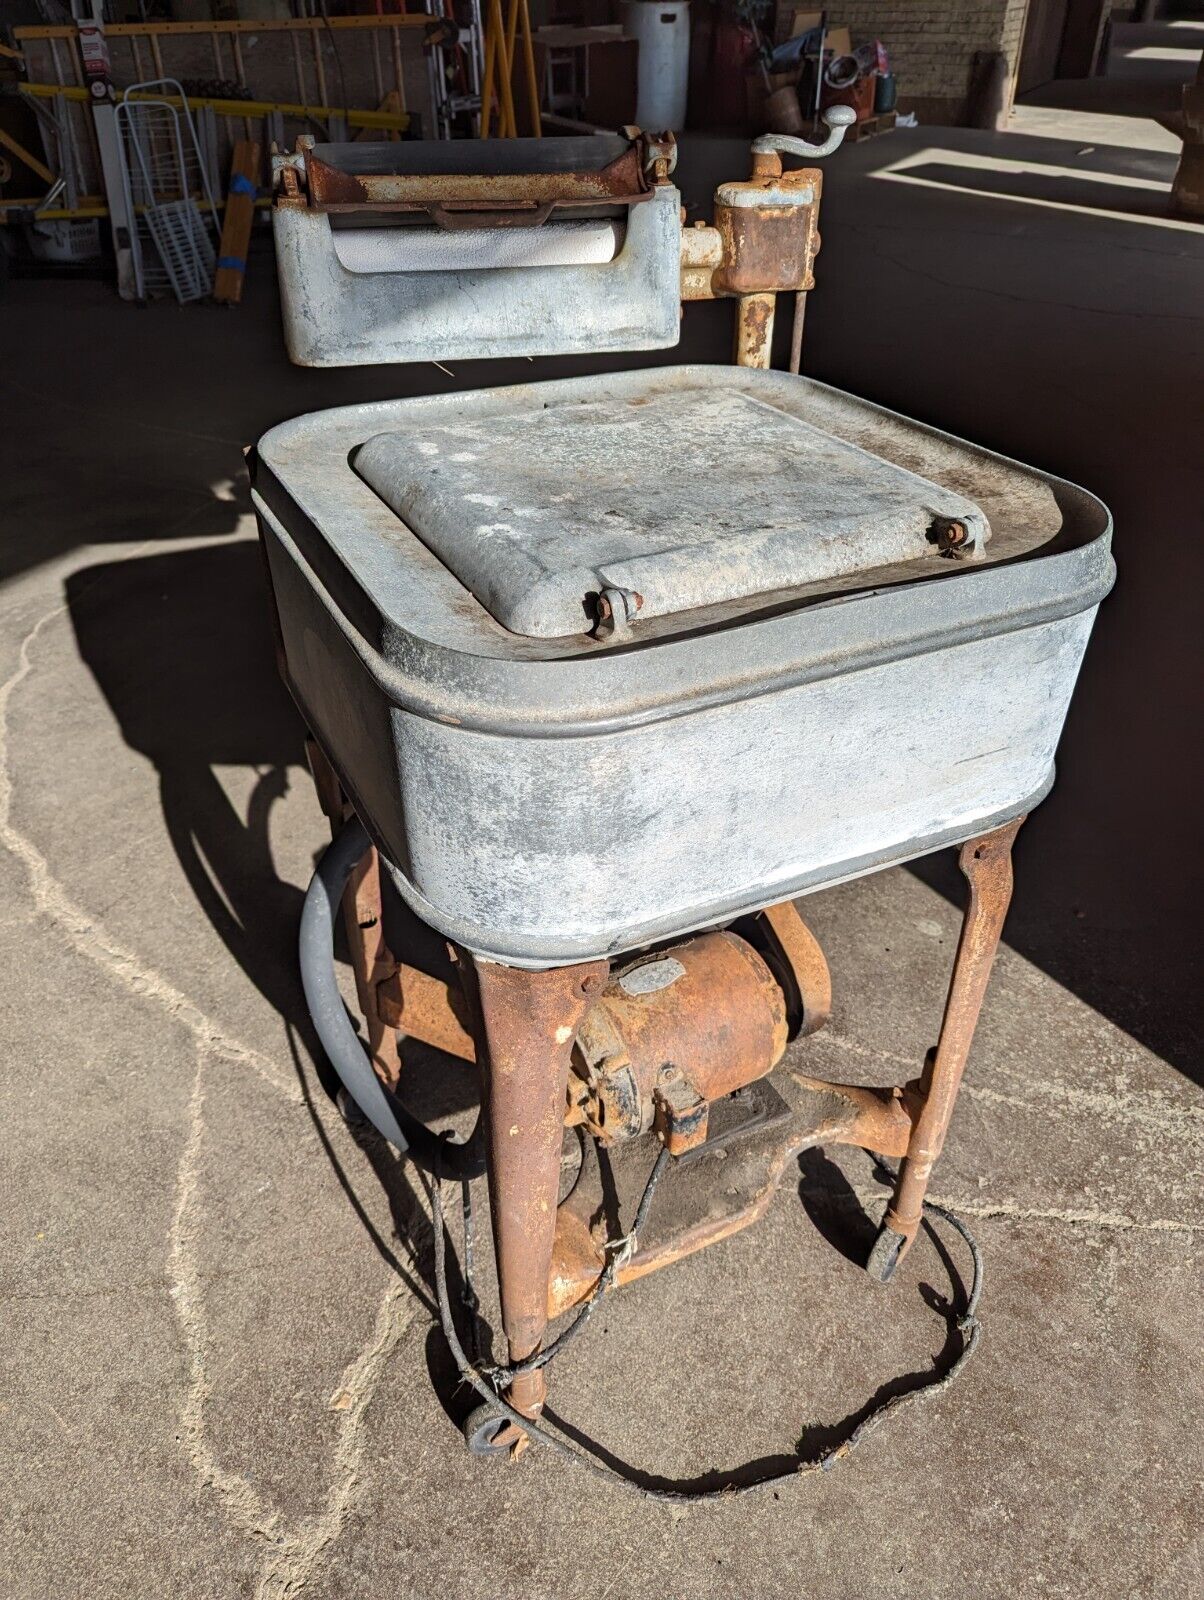 Antique MAYTAG WRINGER WASHER Washing Machine Vintage 1920s